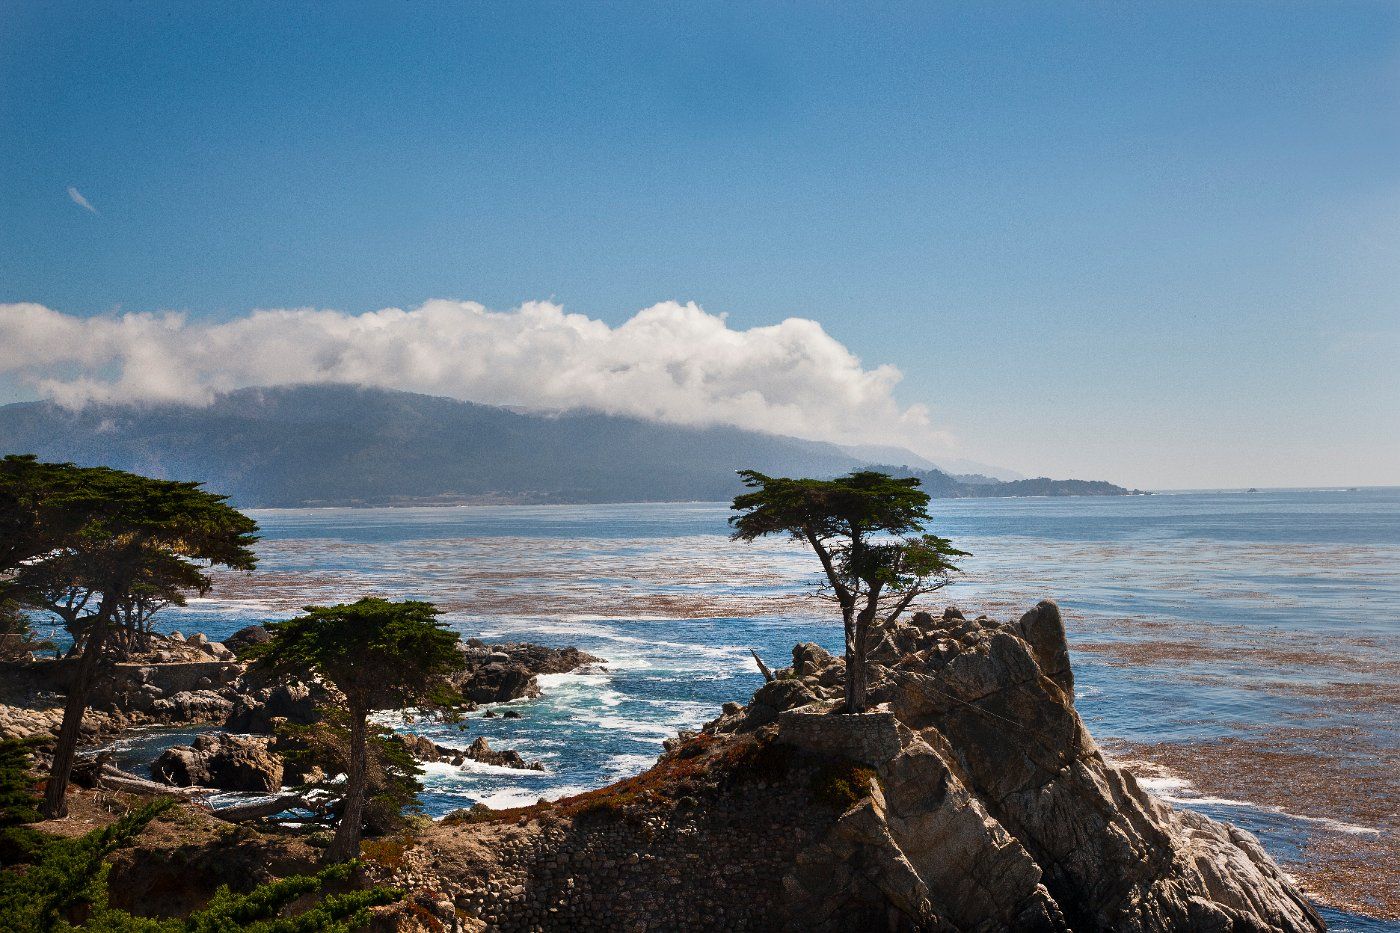 free Monterey